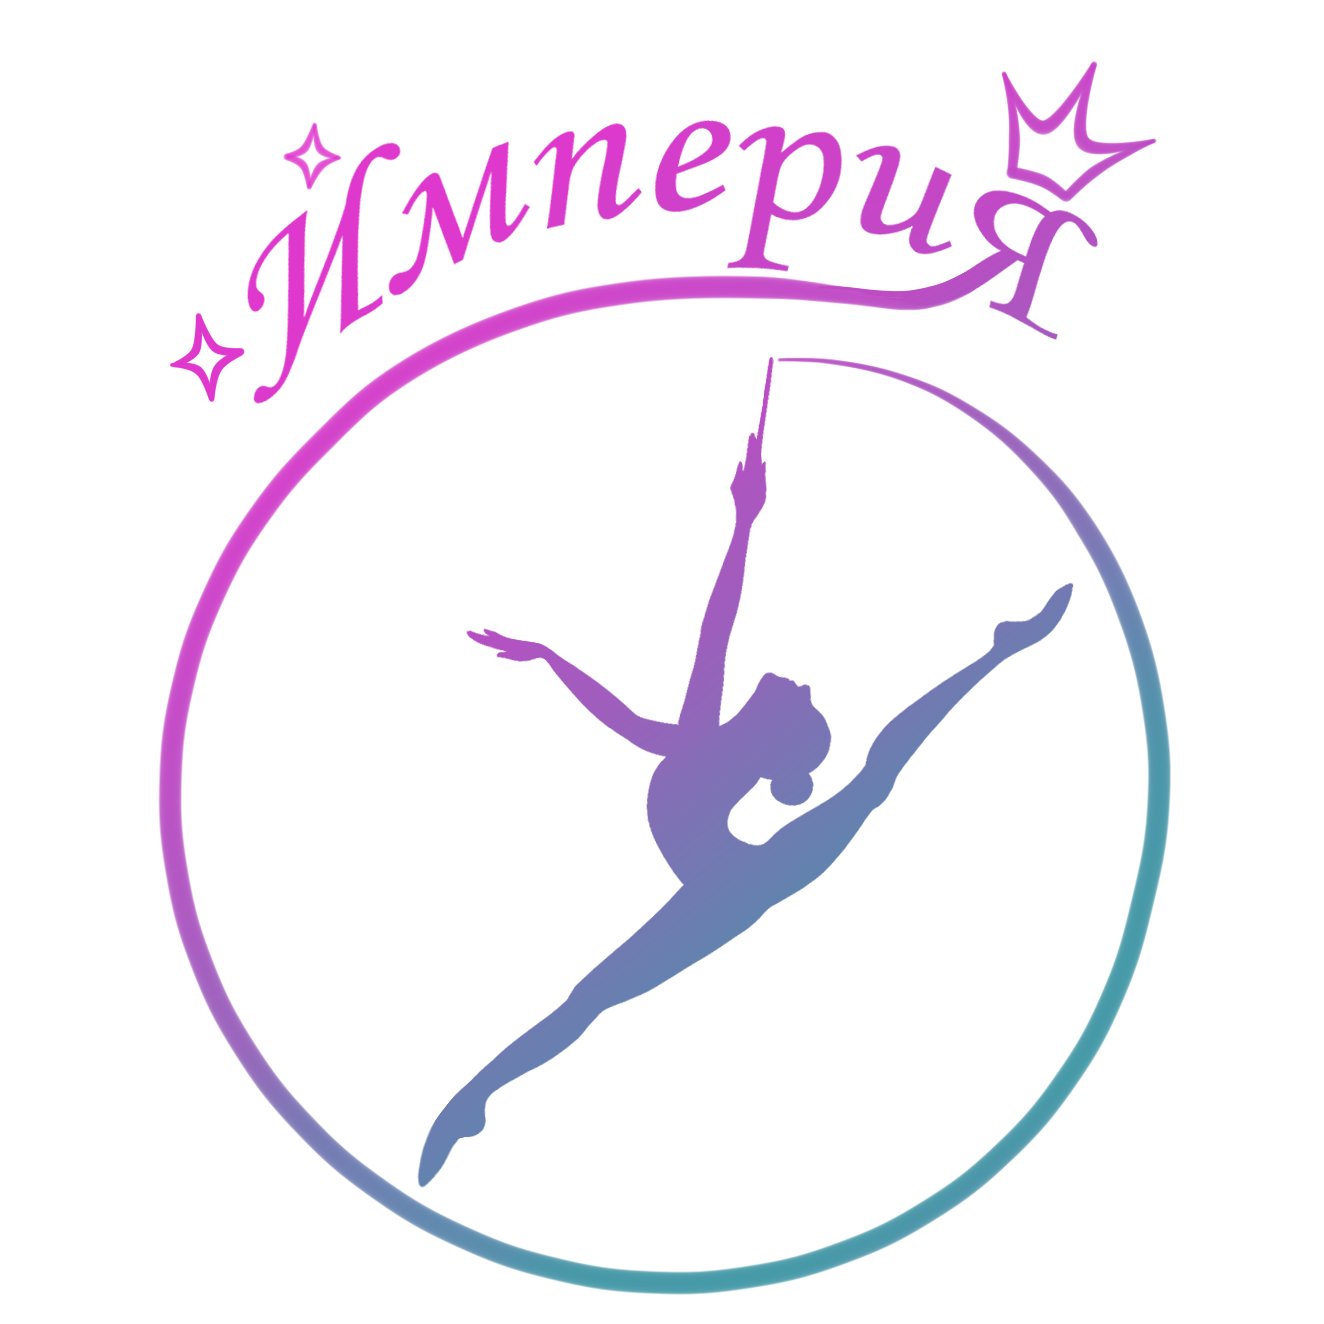 Художественная гимнастика символ